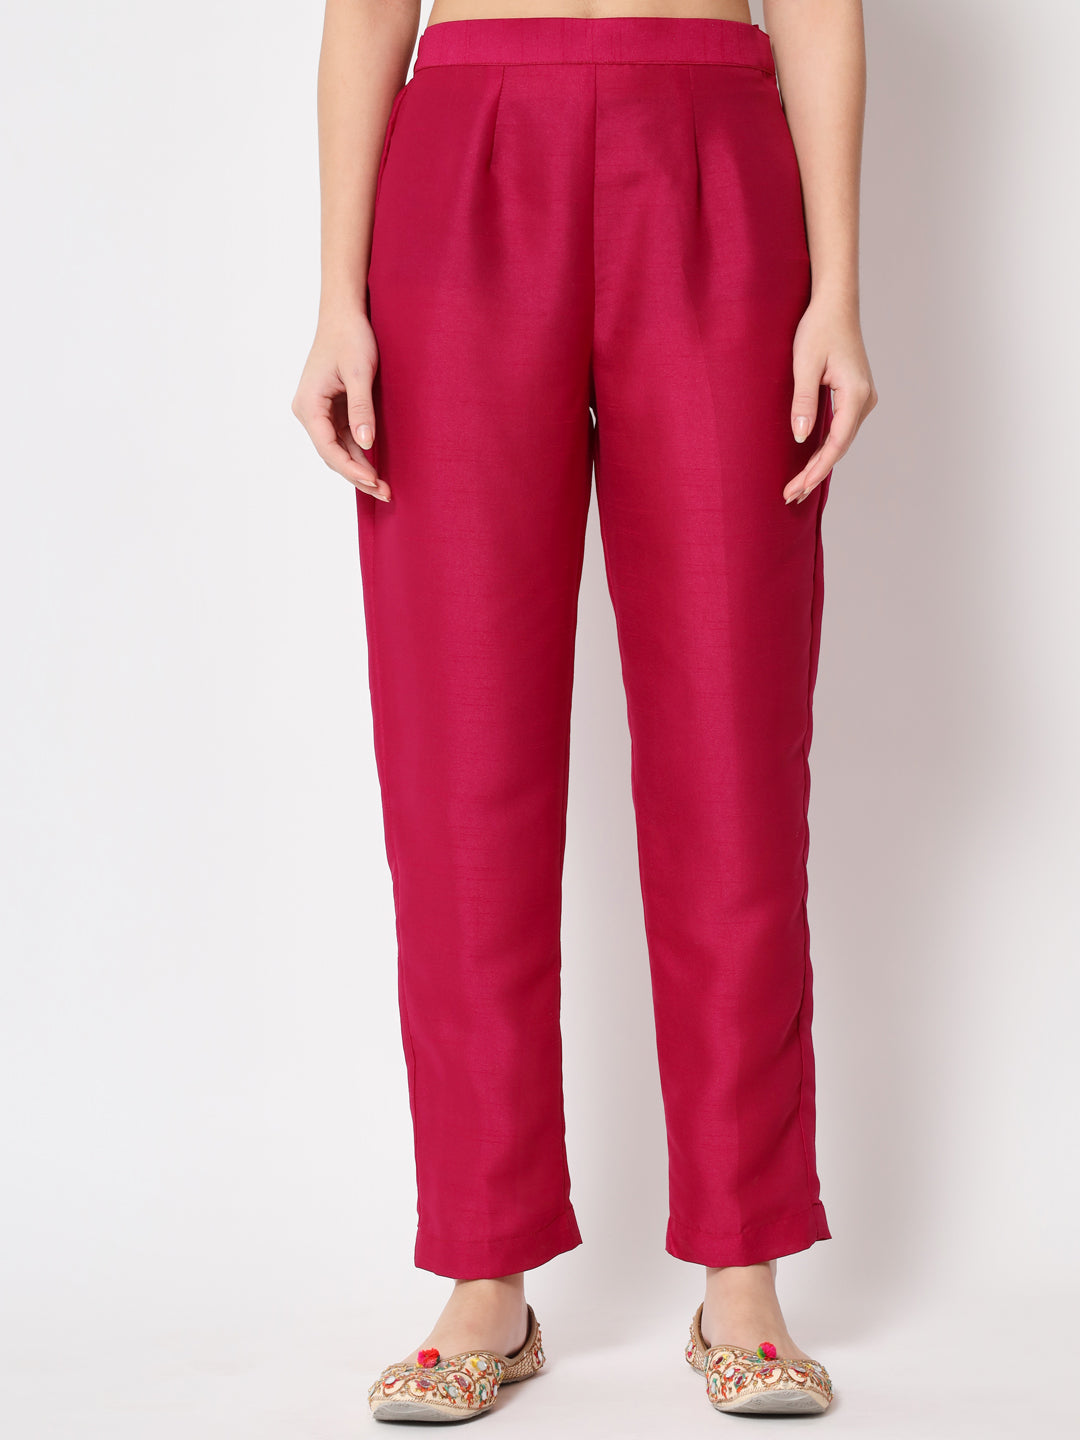 Women's Pink Jacket Style Straight Kurti With Pants - Anokherang